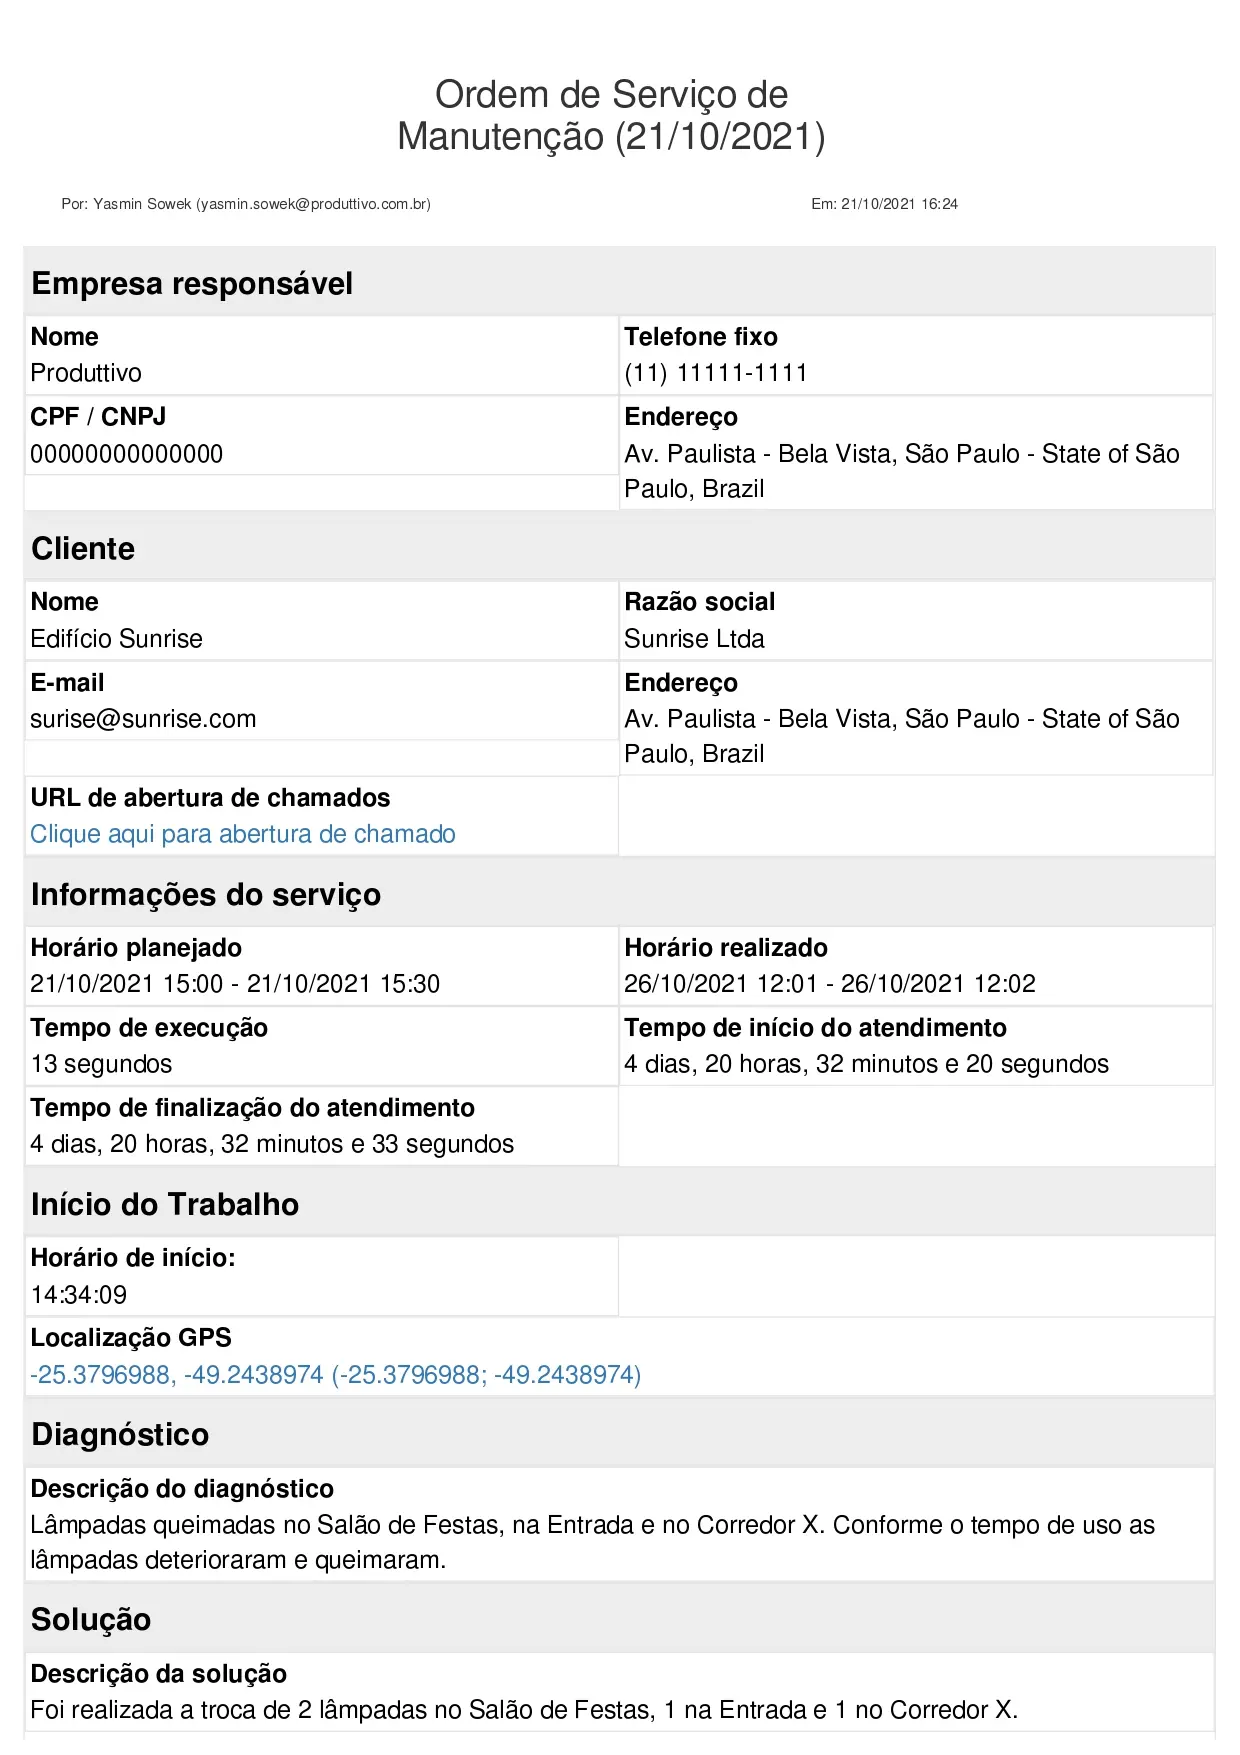 Exemplo de ordem de serviço digital gerada no sistema do Produttivo com informações do serviço, registros fotográficos e assinatura, página 01